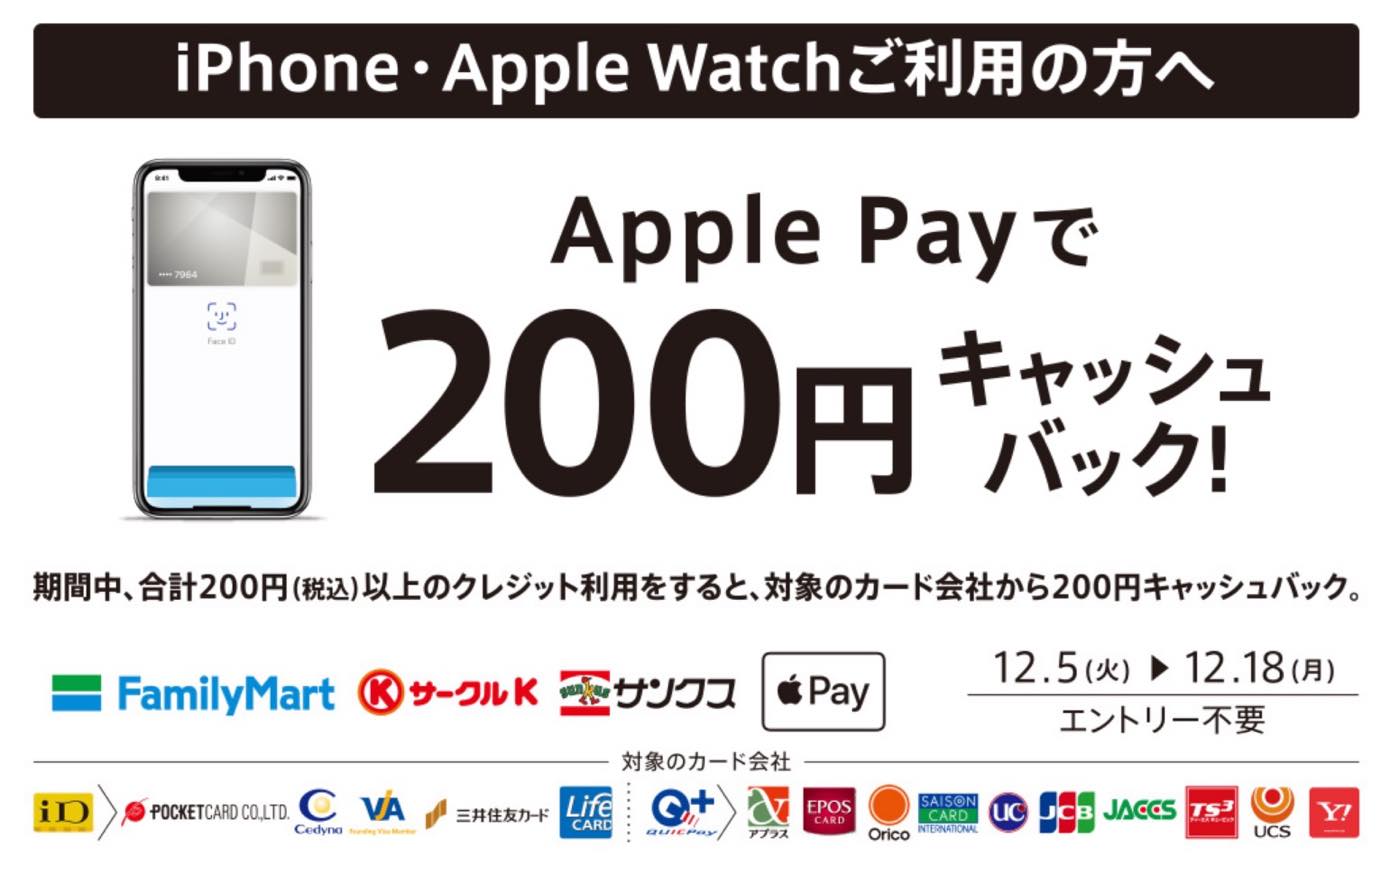 ファミリーマート、｢Apple Payで200円キャッシュバック!｣キャンペーンを実施中